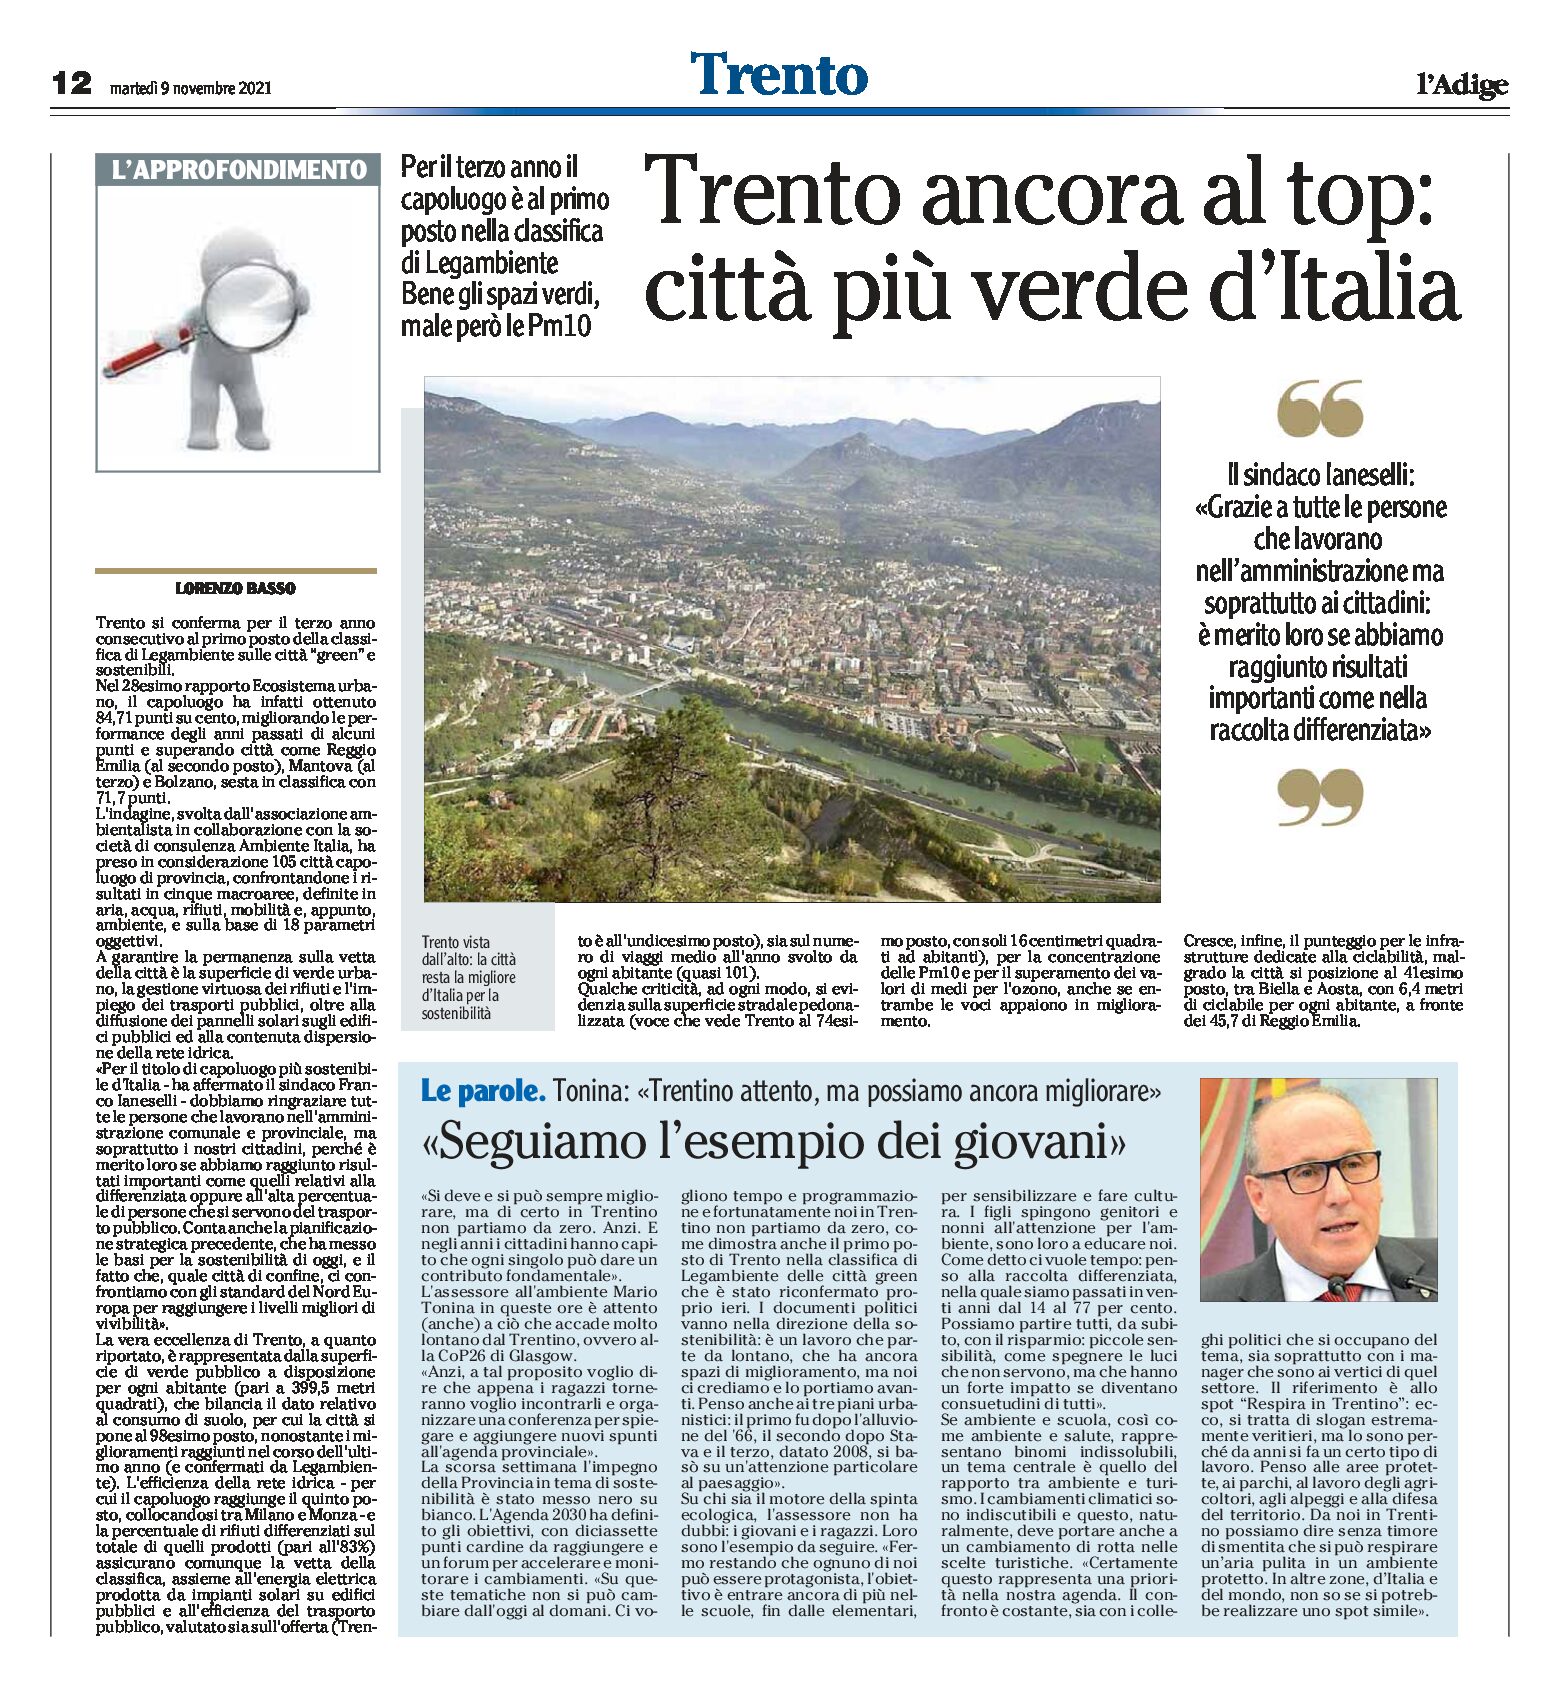 Trento ancora al top: città più verde d’Italia